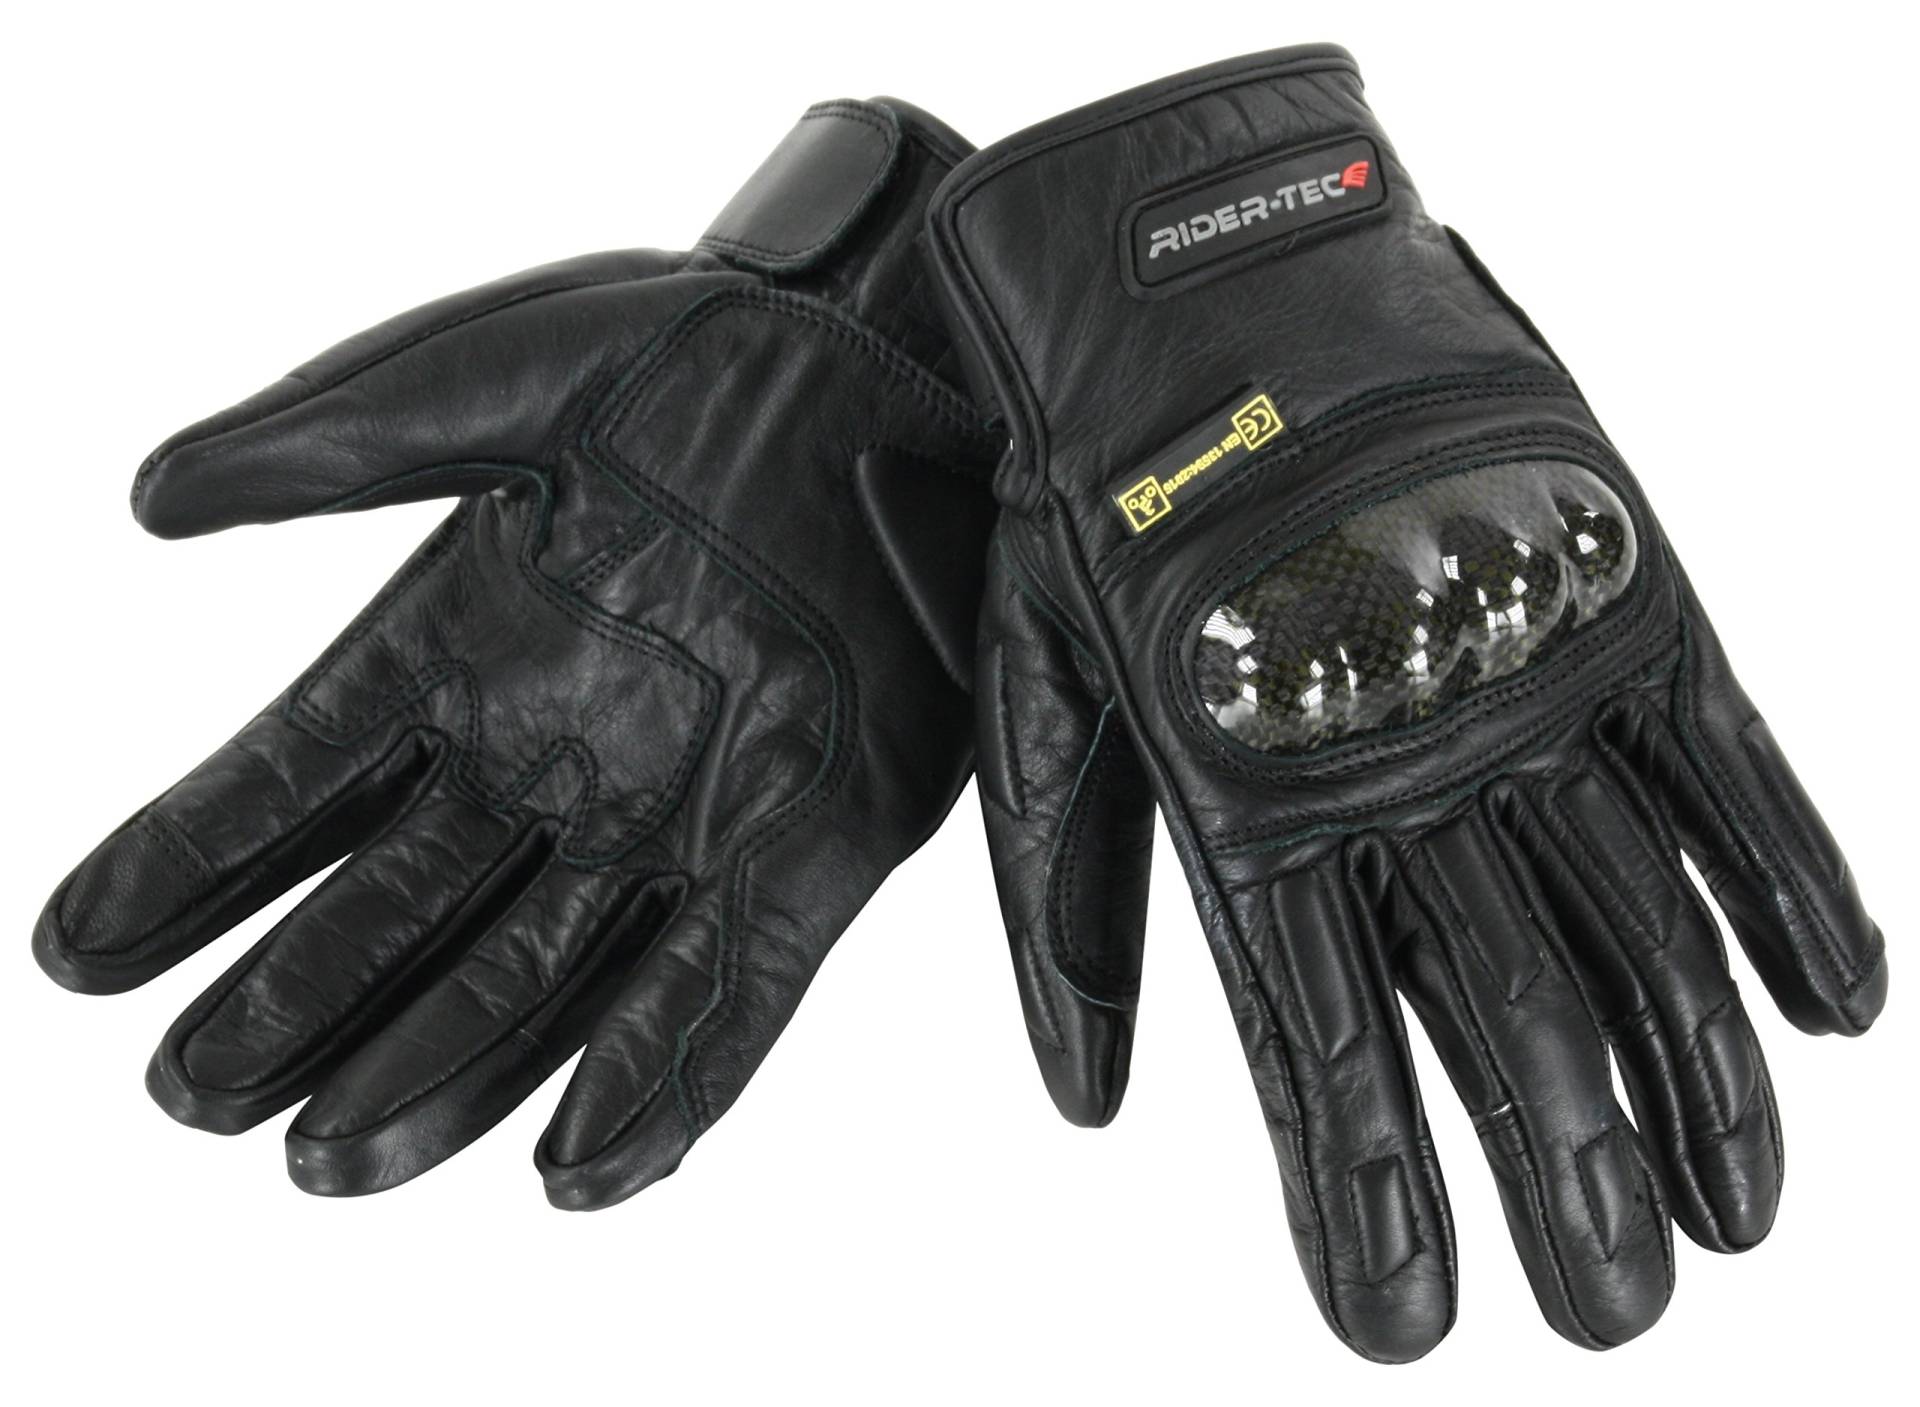 RIDER-TEC Handschuhe Motorrad Leder postgeprüft rt-4133-b, schwarz, Größe M von Rider-Tec